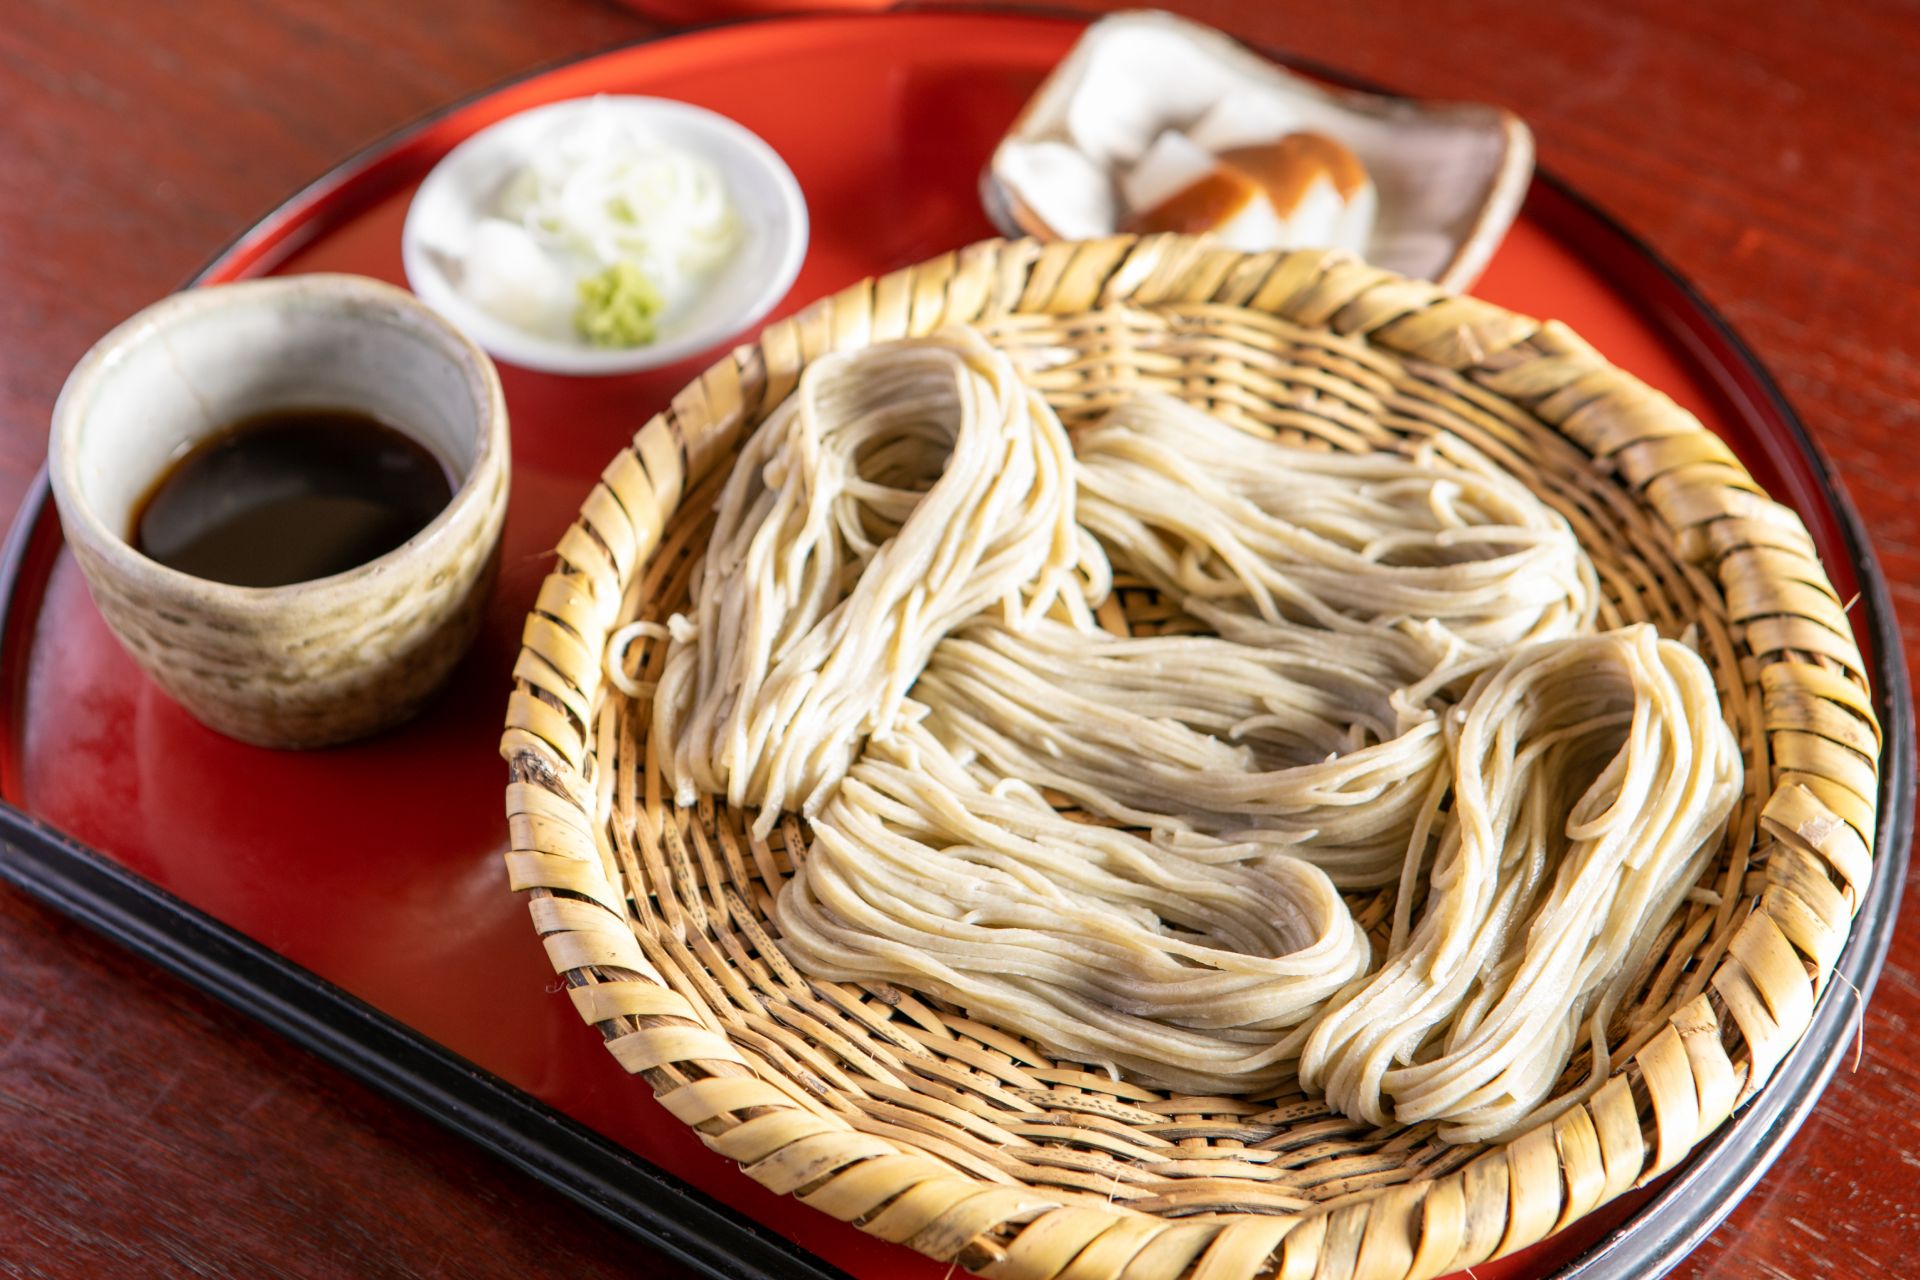 Yata-an utilise de la farine de sarrasin de haute qualité de Shinshu, où le propriétaire s'est formé, et d'Aoi Motoyama.